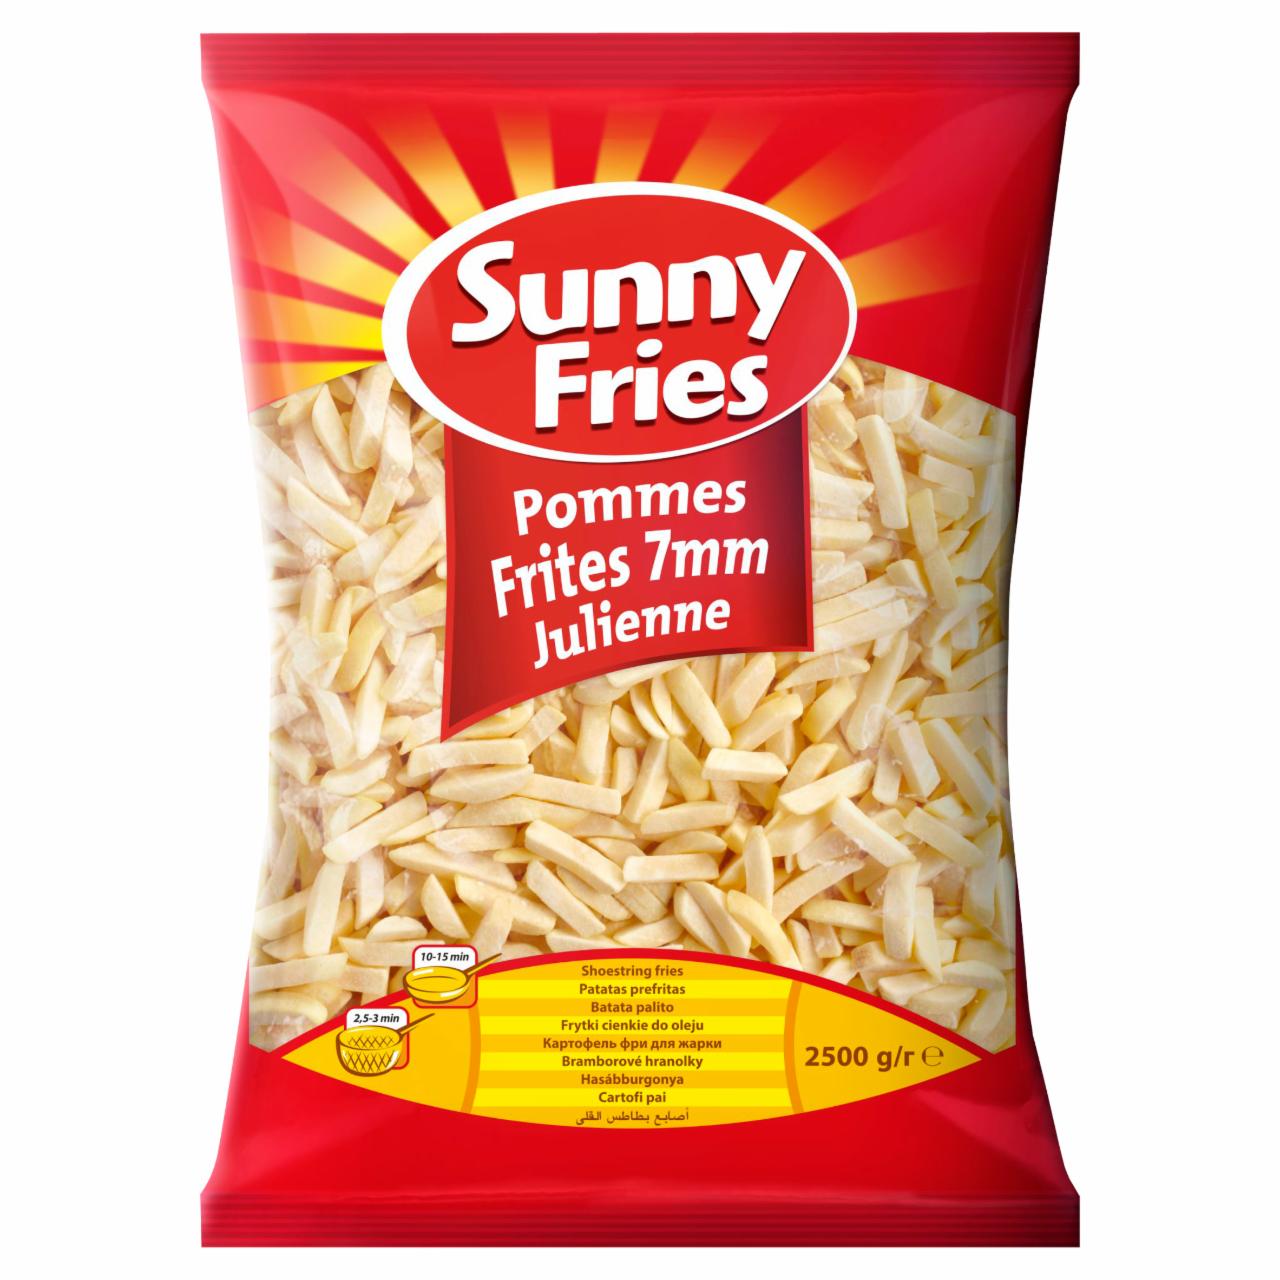 Zdjęcia - Sunny Fries Frytki cienkie do oleju 7 mm 2,5 kg